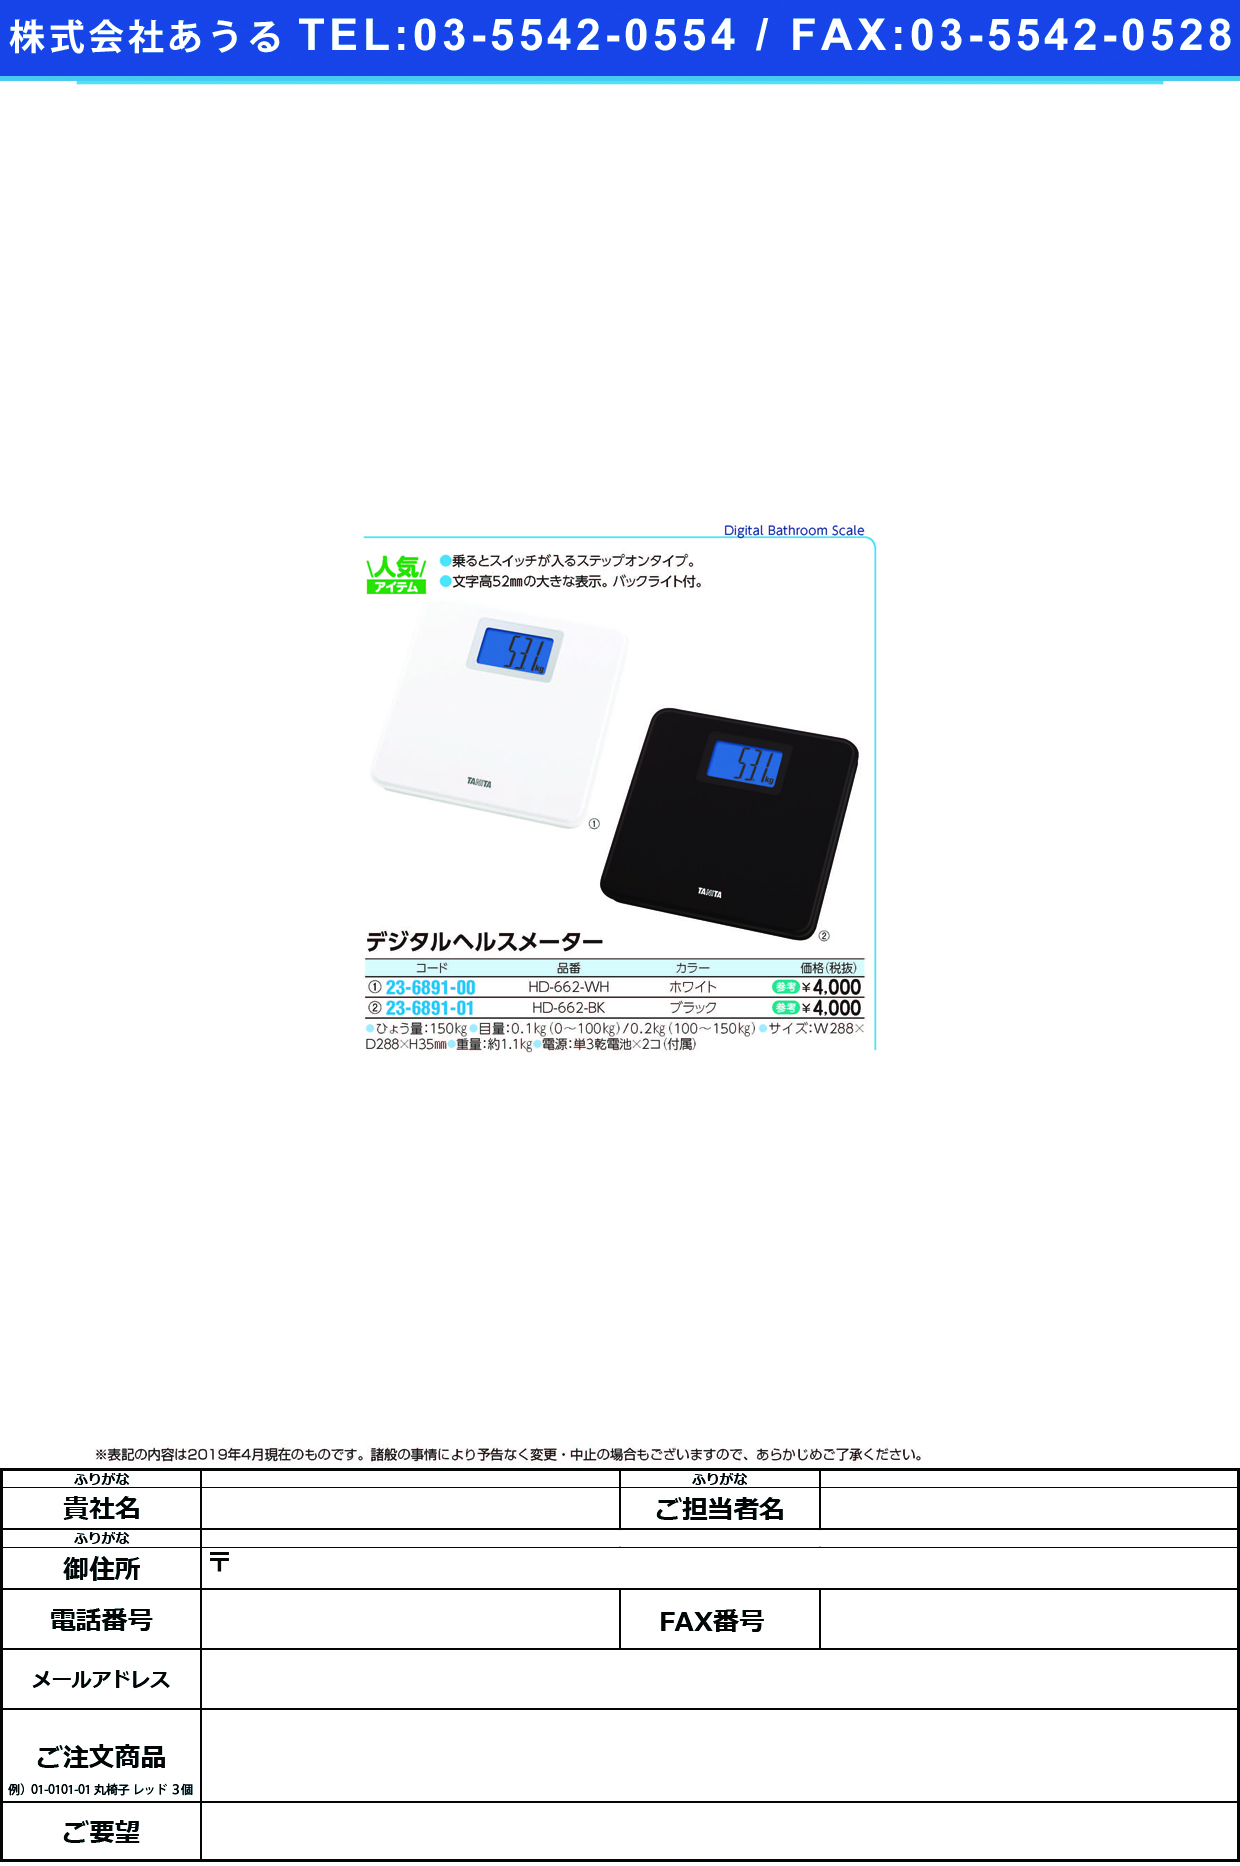 (23-6891-00)デジタルヘルスメーター HD-662(ﾎﾜｲﾄ) ﾃﾞｼﾞﾀﾙﾍﾙｽﾒｰﾀｰ(タニタ)【1台単位】【2019年カタログ商品】